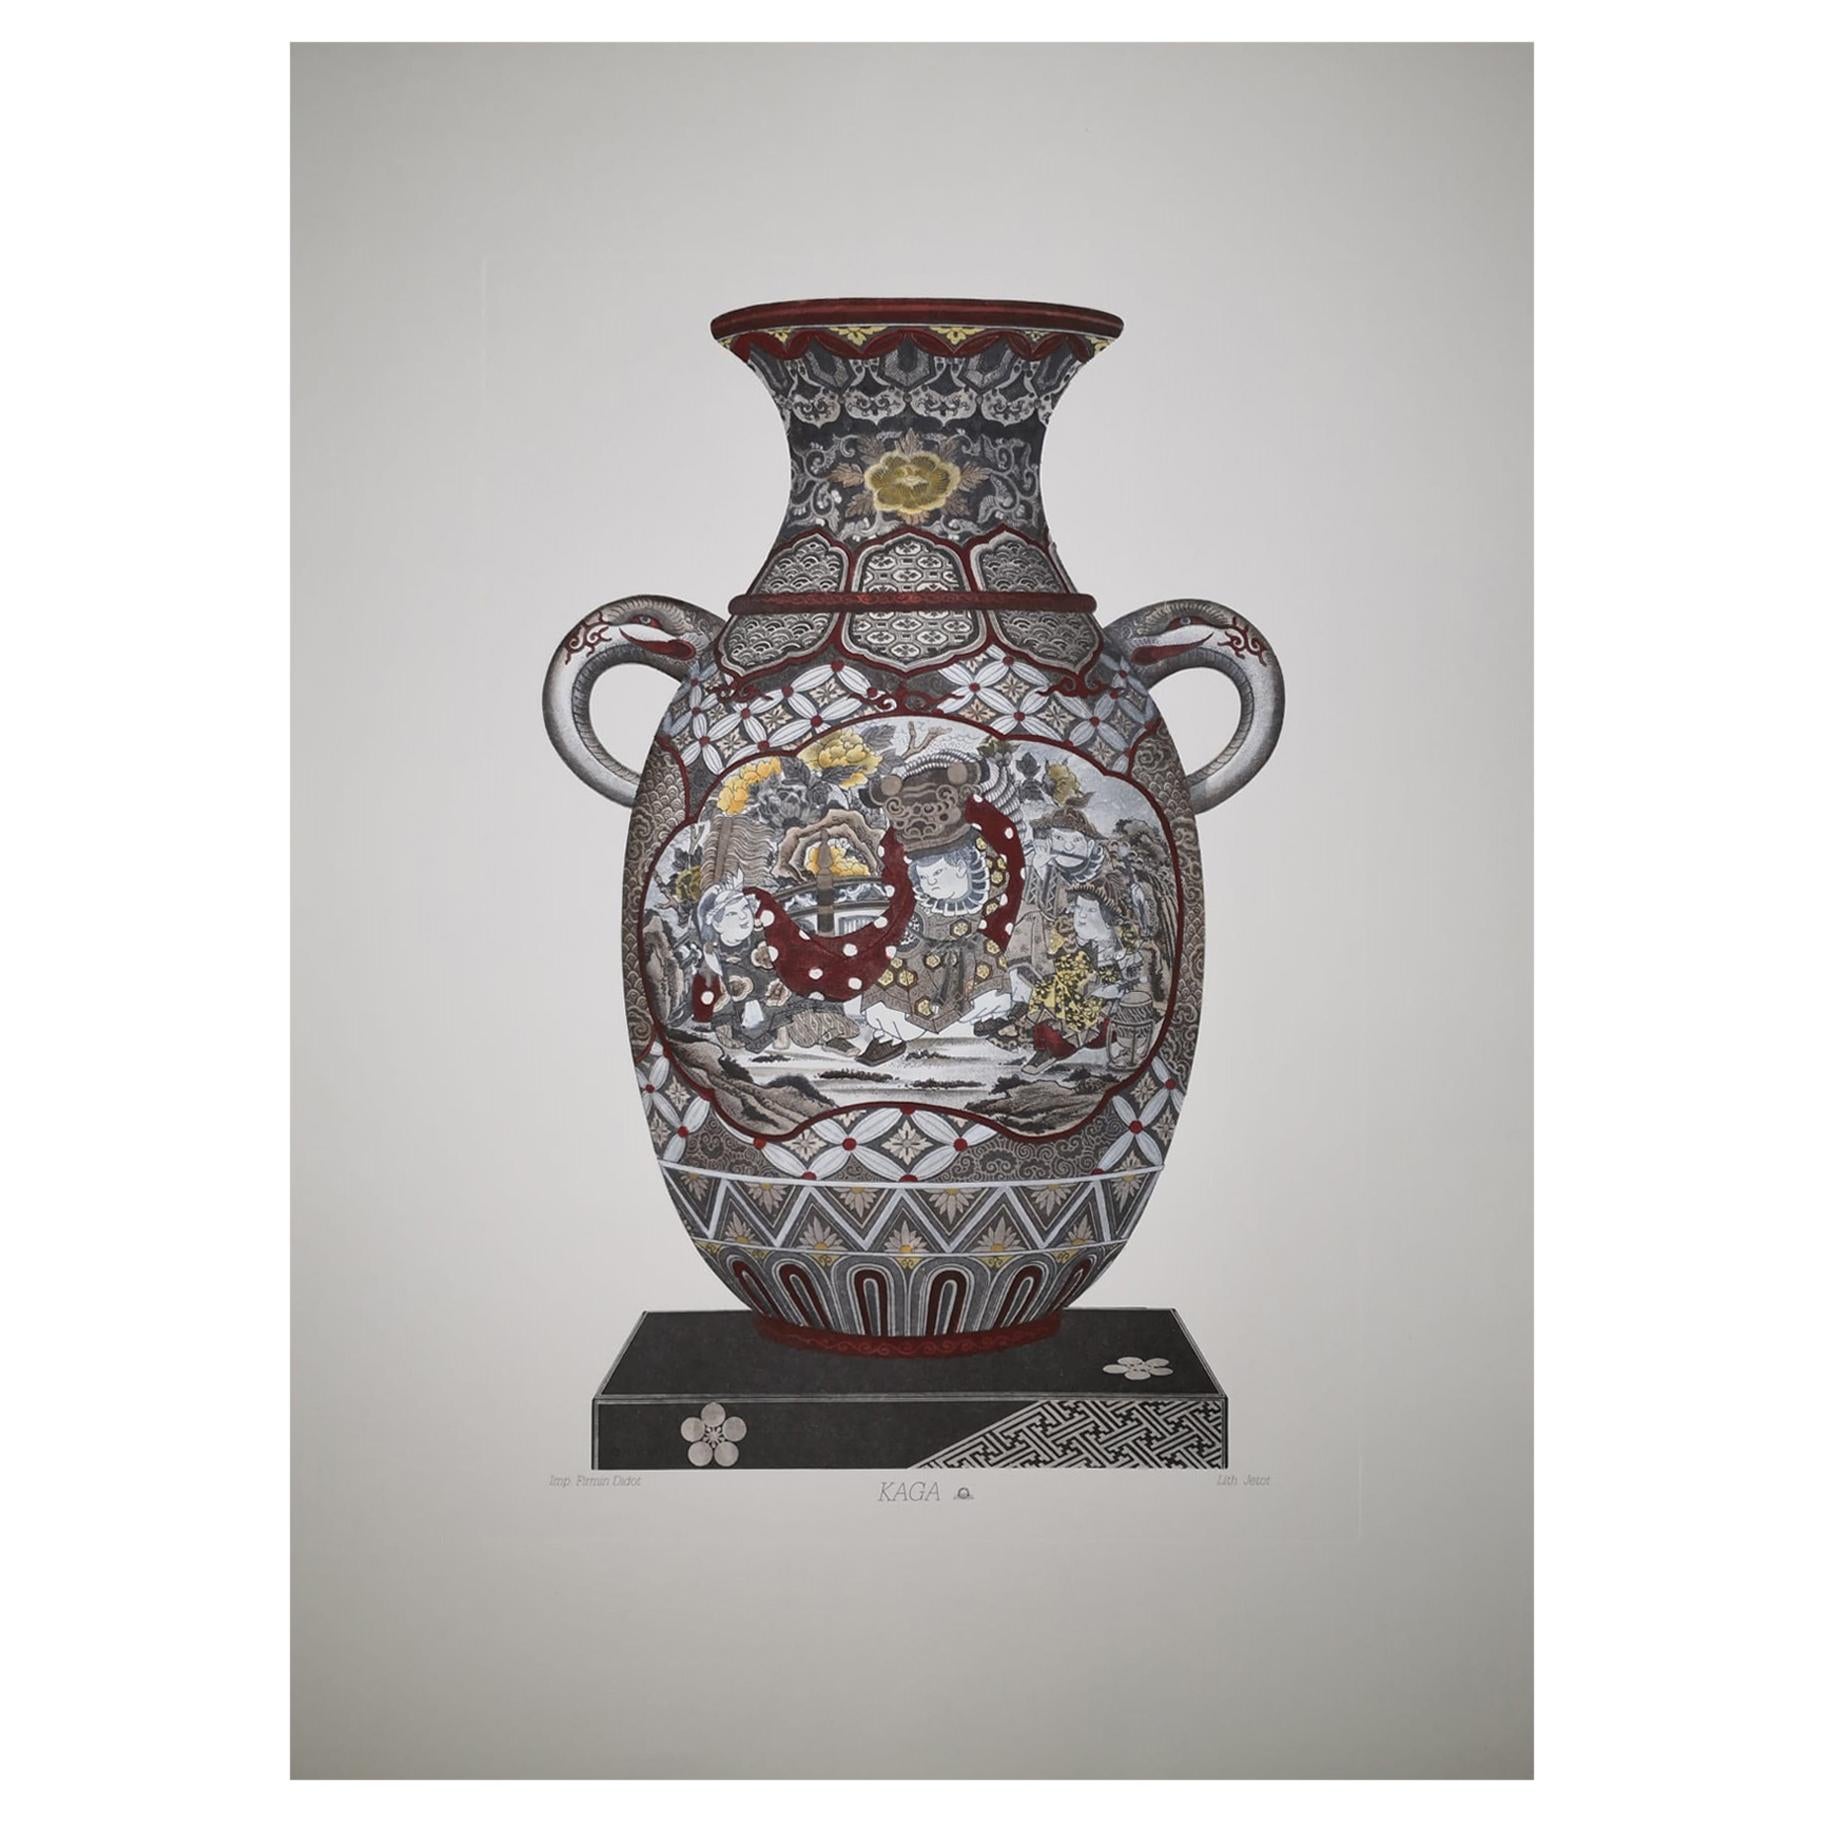 Impression de vase japonais « KAGA » peint à la main en Italie